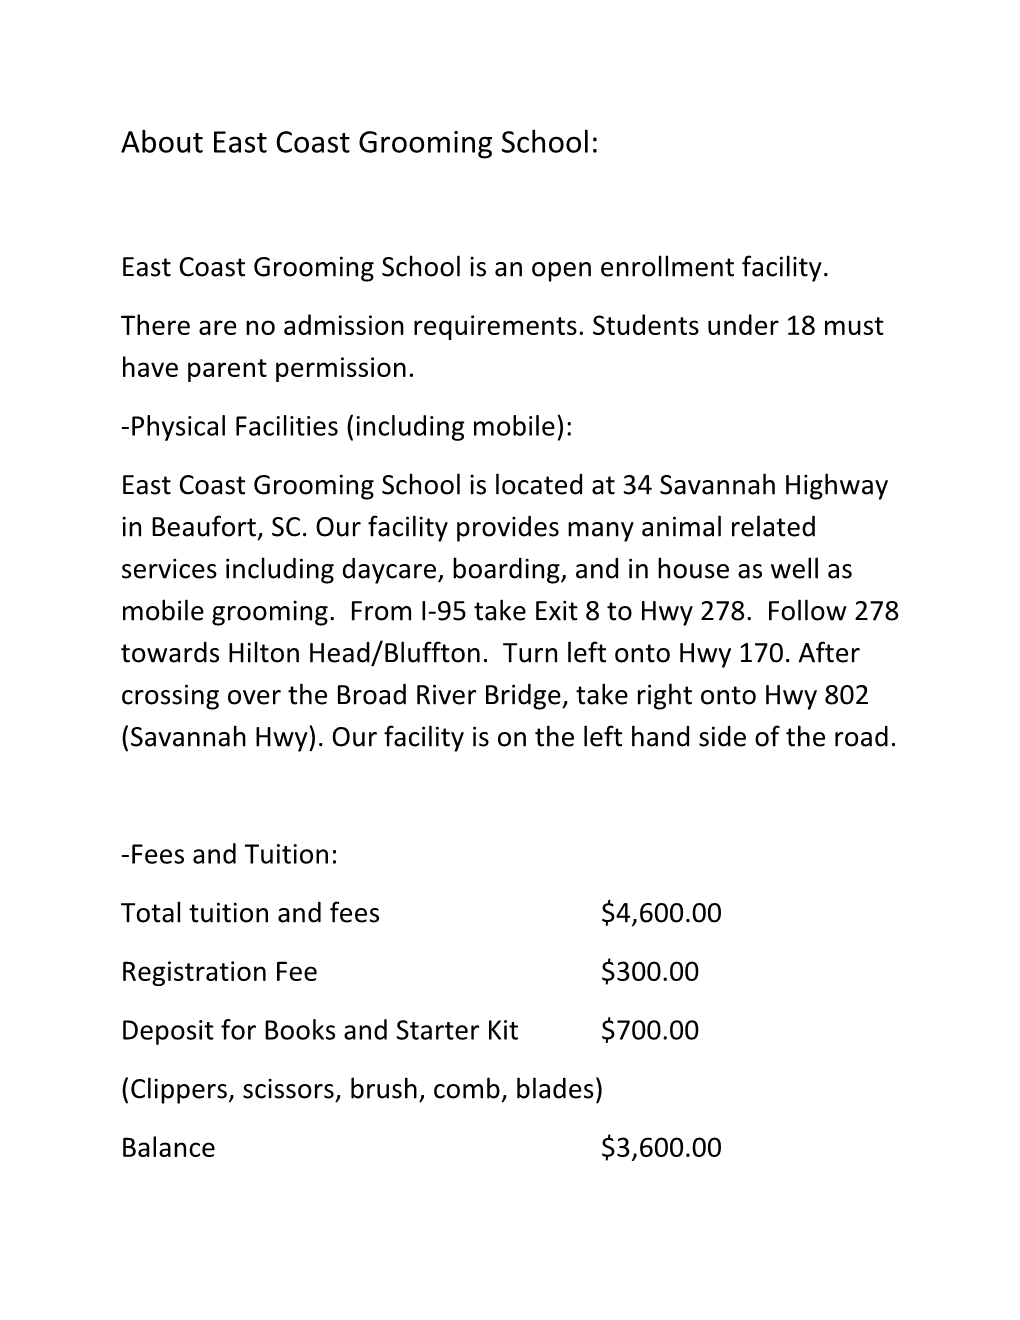 East Coast Grooming School